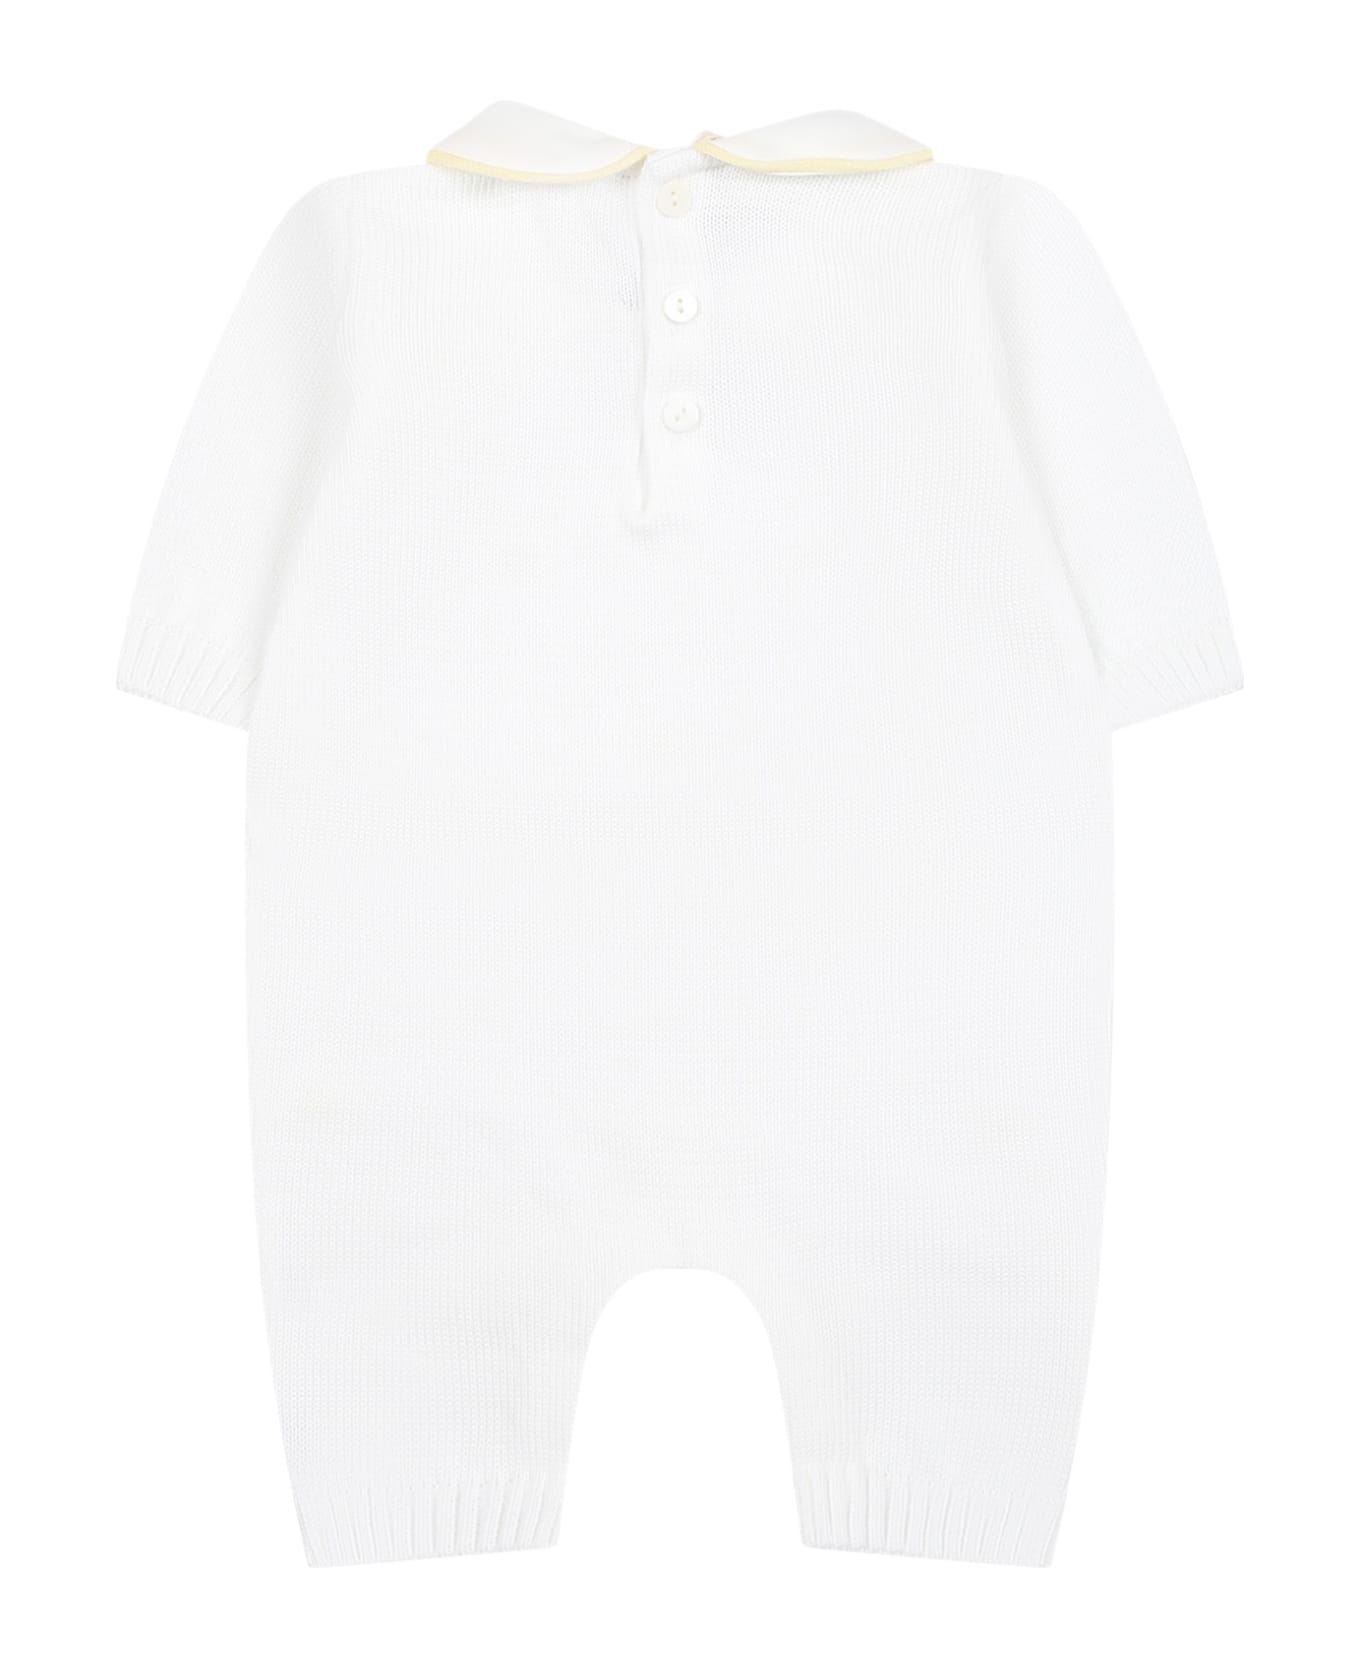 Little Bear White Babygrown For Baby Kids - White